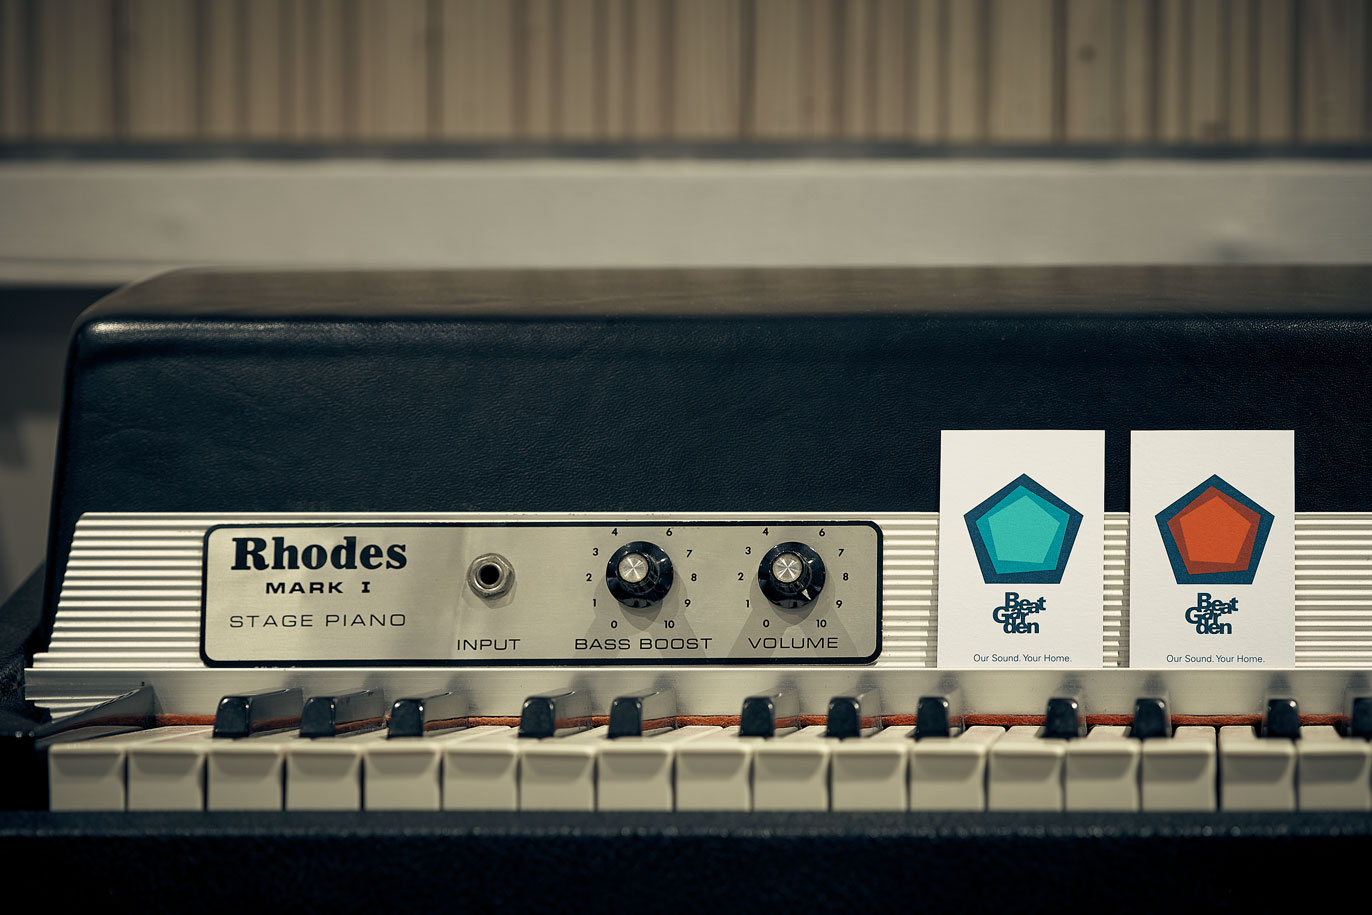 Targetes de visita amb nou logo de l'estudi de gravació BeatGarden sobre Fender Rhodes